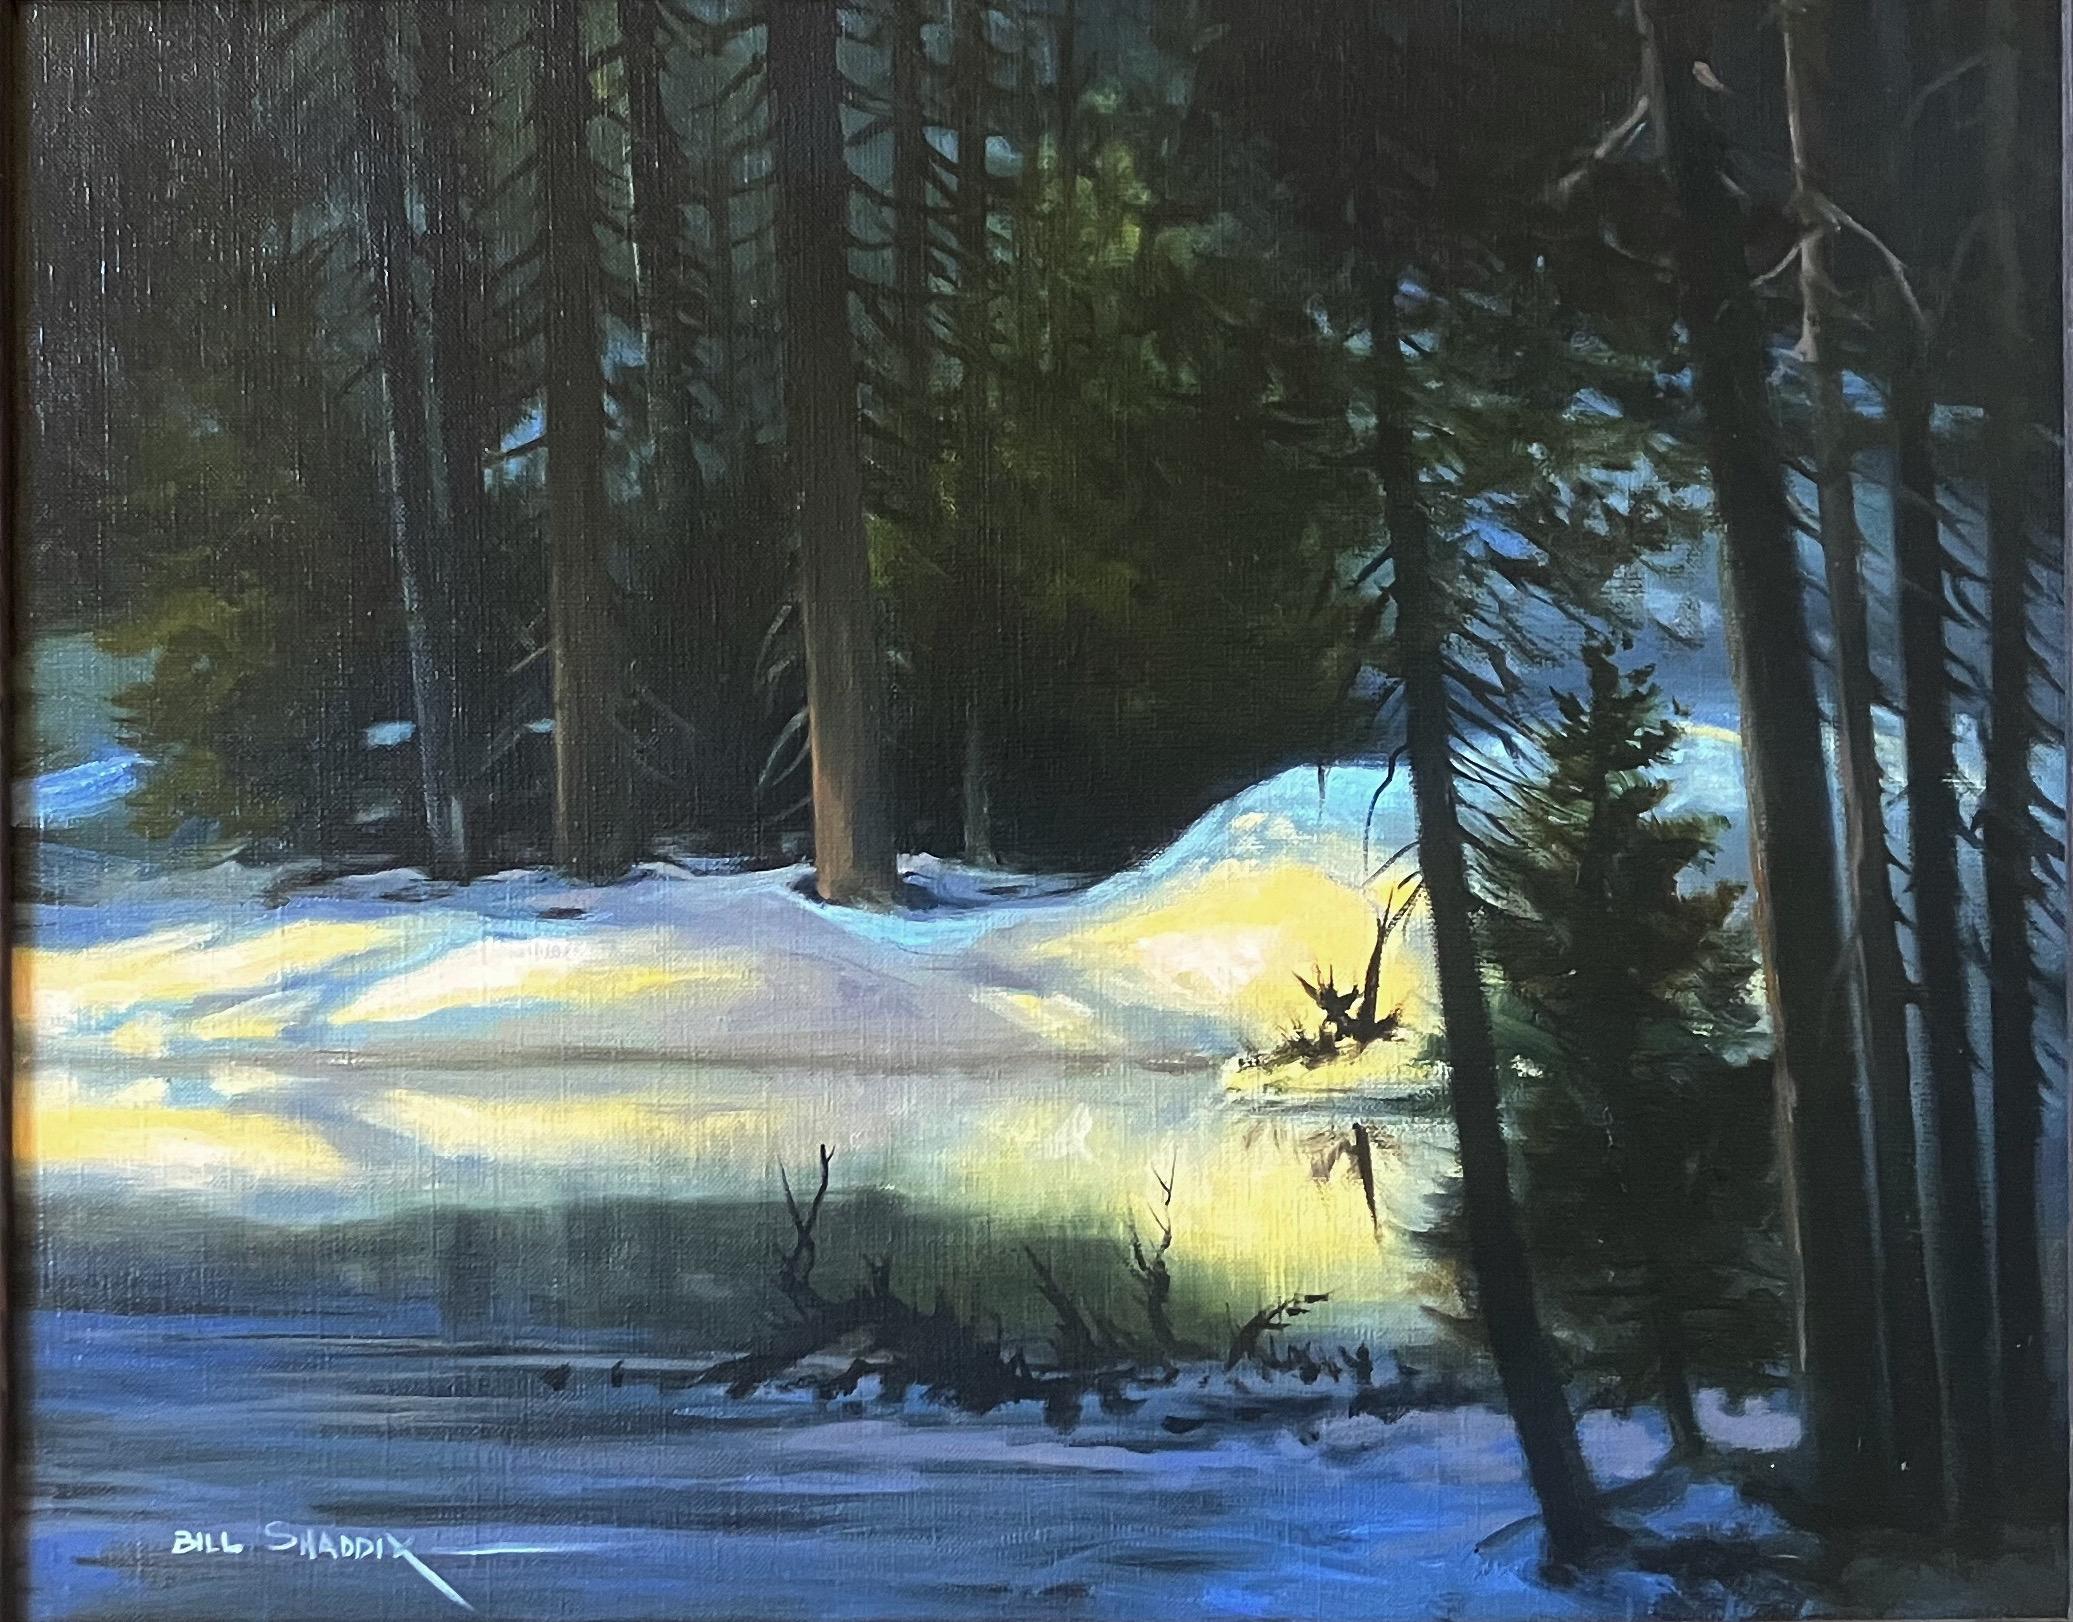 Tiefe Schatten – Painting von Bill Shaddix